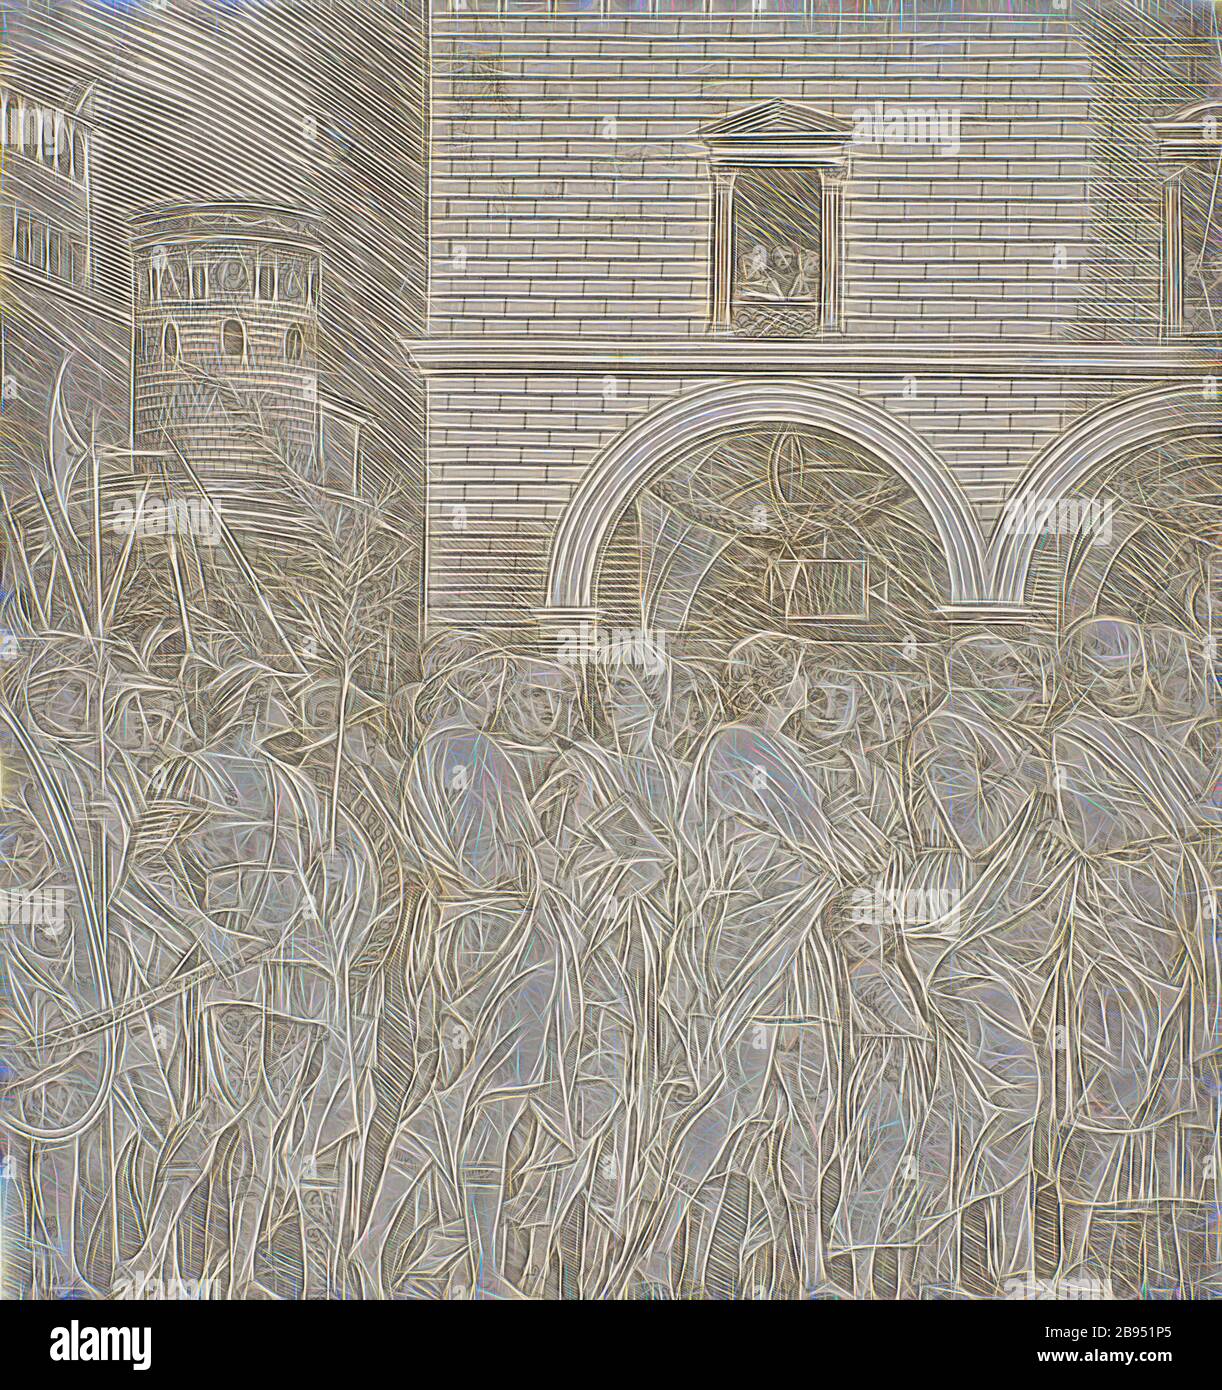 Les sénateurs - le Triumph de Julius Caesar, École d'Andrea Mantegna (Italien, 1426-1506), 1495-1498, gravure sur papier crème, 11-1/4 x 10-1/2 po. (Image et feuille), la série, le Triumph de Julius César, repensé par Gibon, conception de la gaie chaleureuse de luminosité et de rayons de lumière radiance. L'art classique réinventé avec une touche moderne. La photographie inspirée du futurisme, qui embrasse l'énergie dynamique de la technologie moderne, du mouvement, de la vitesse et révolutionne la culture. Banque D'Images